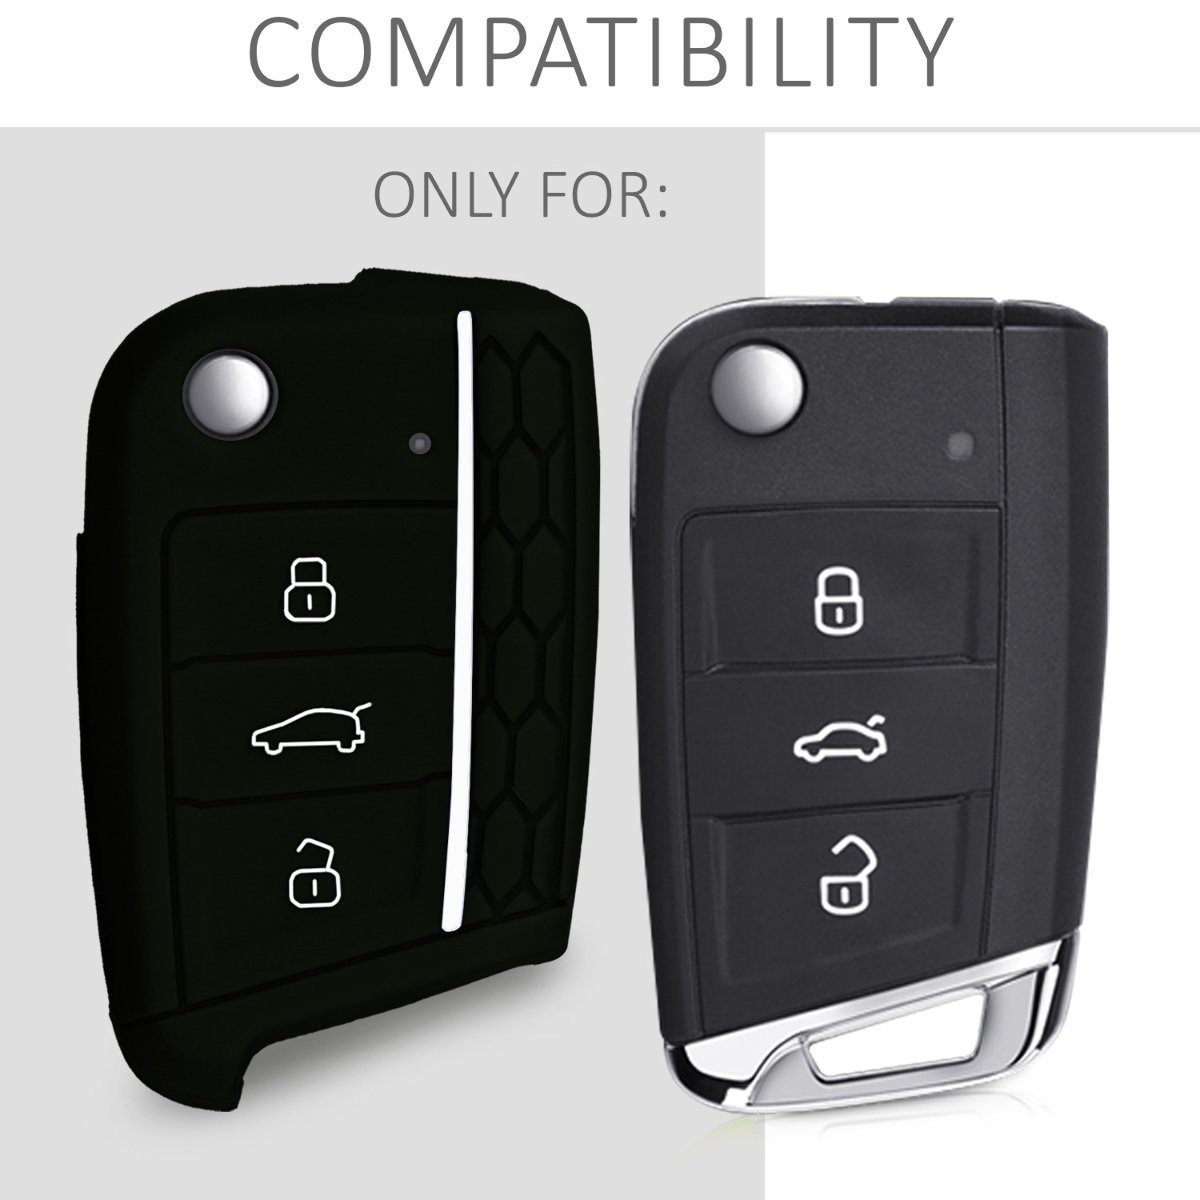 Silikon Schlüsselhülle Schlüssel Cover Autoschlüssel für Case 7 kwmobile MK7, Schwarz-Weiß Golf VW Hülle Schlüsseltasche